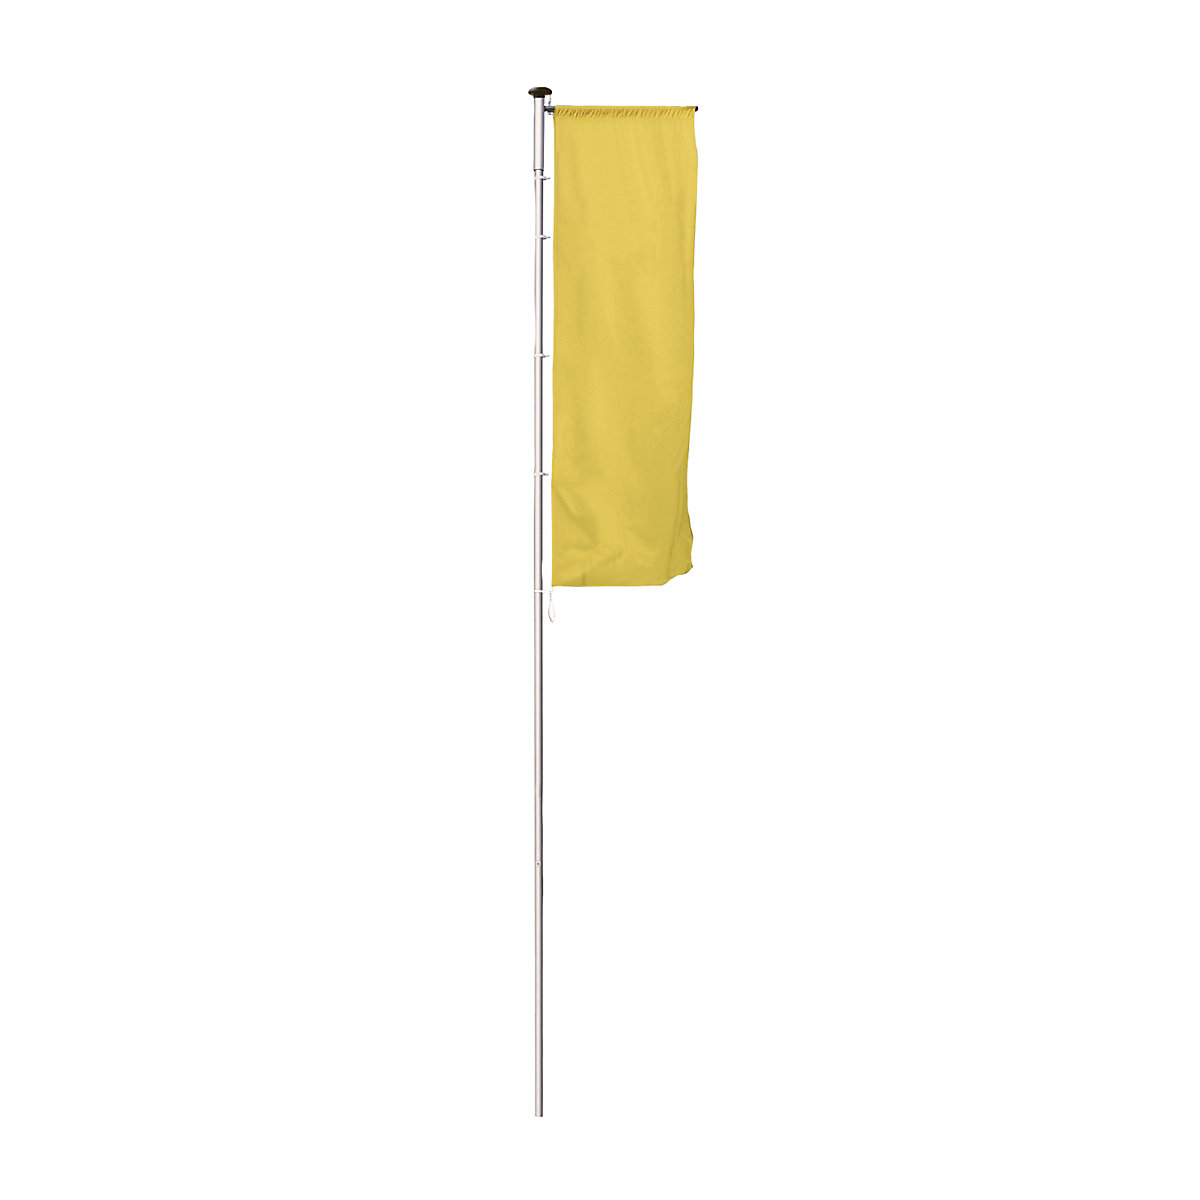 Mannus – PIRAT aluminium flag pole